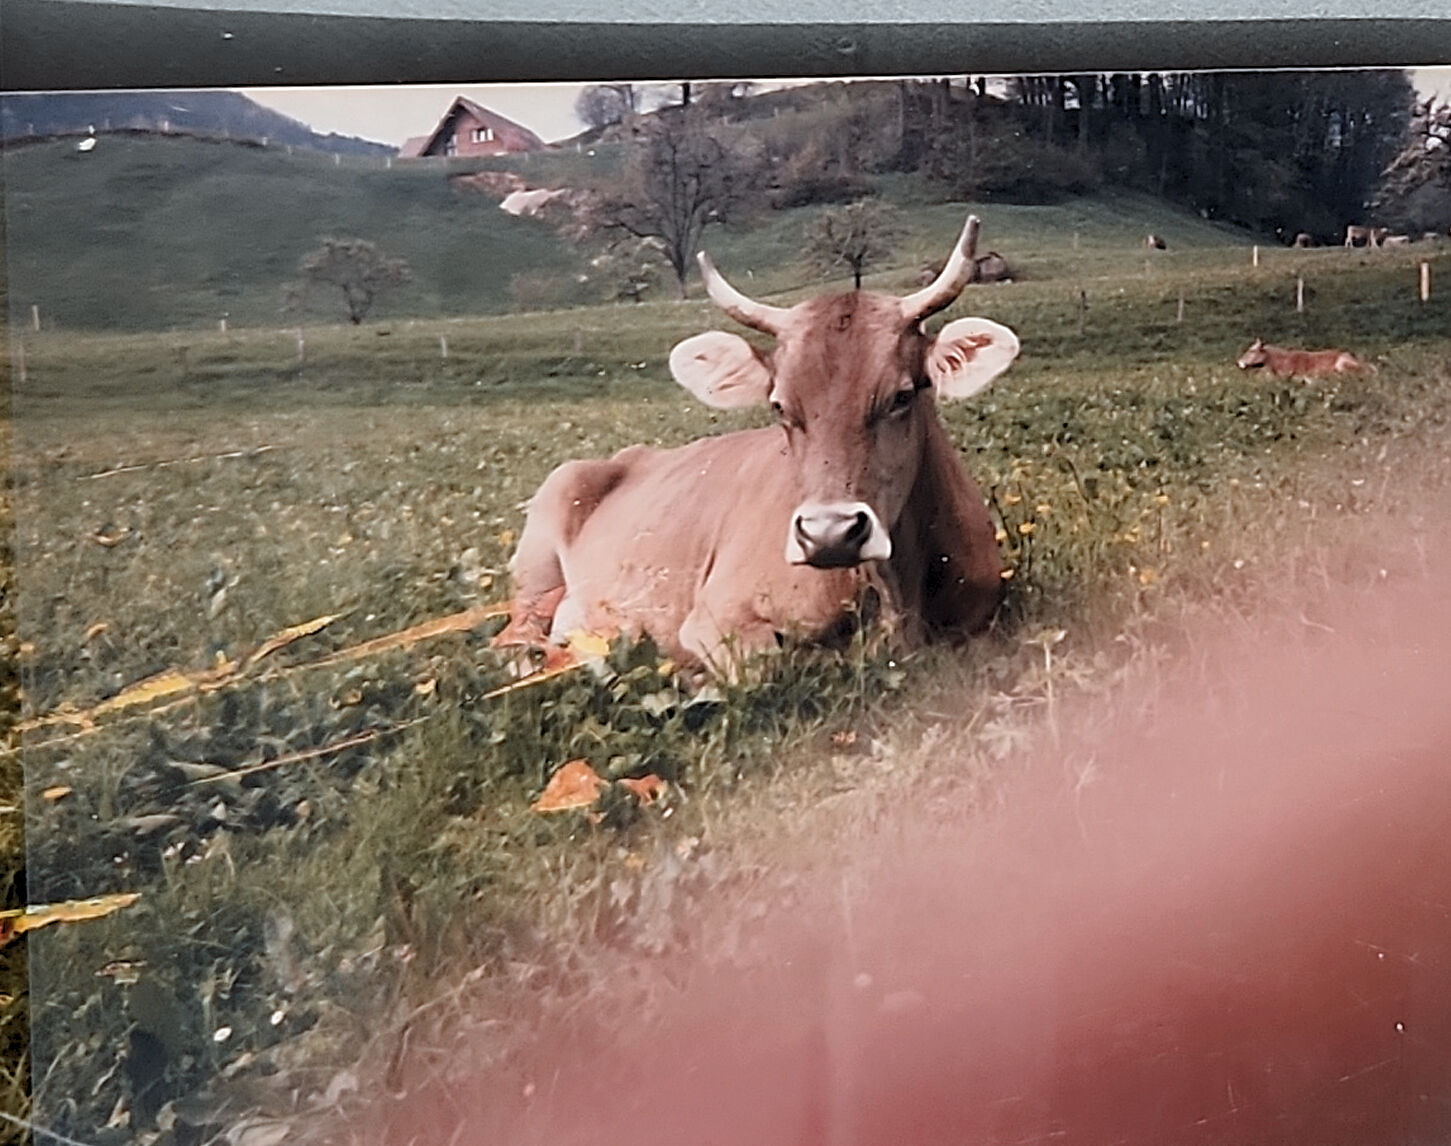 Austria, 1989